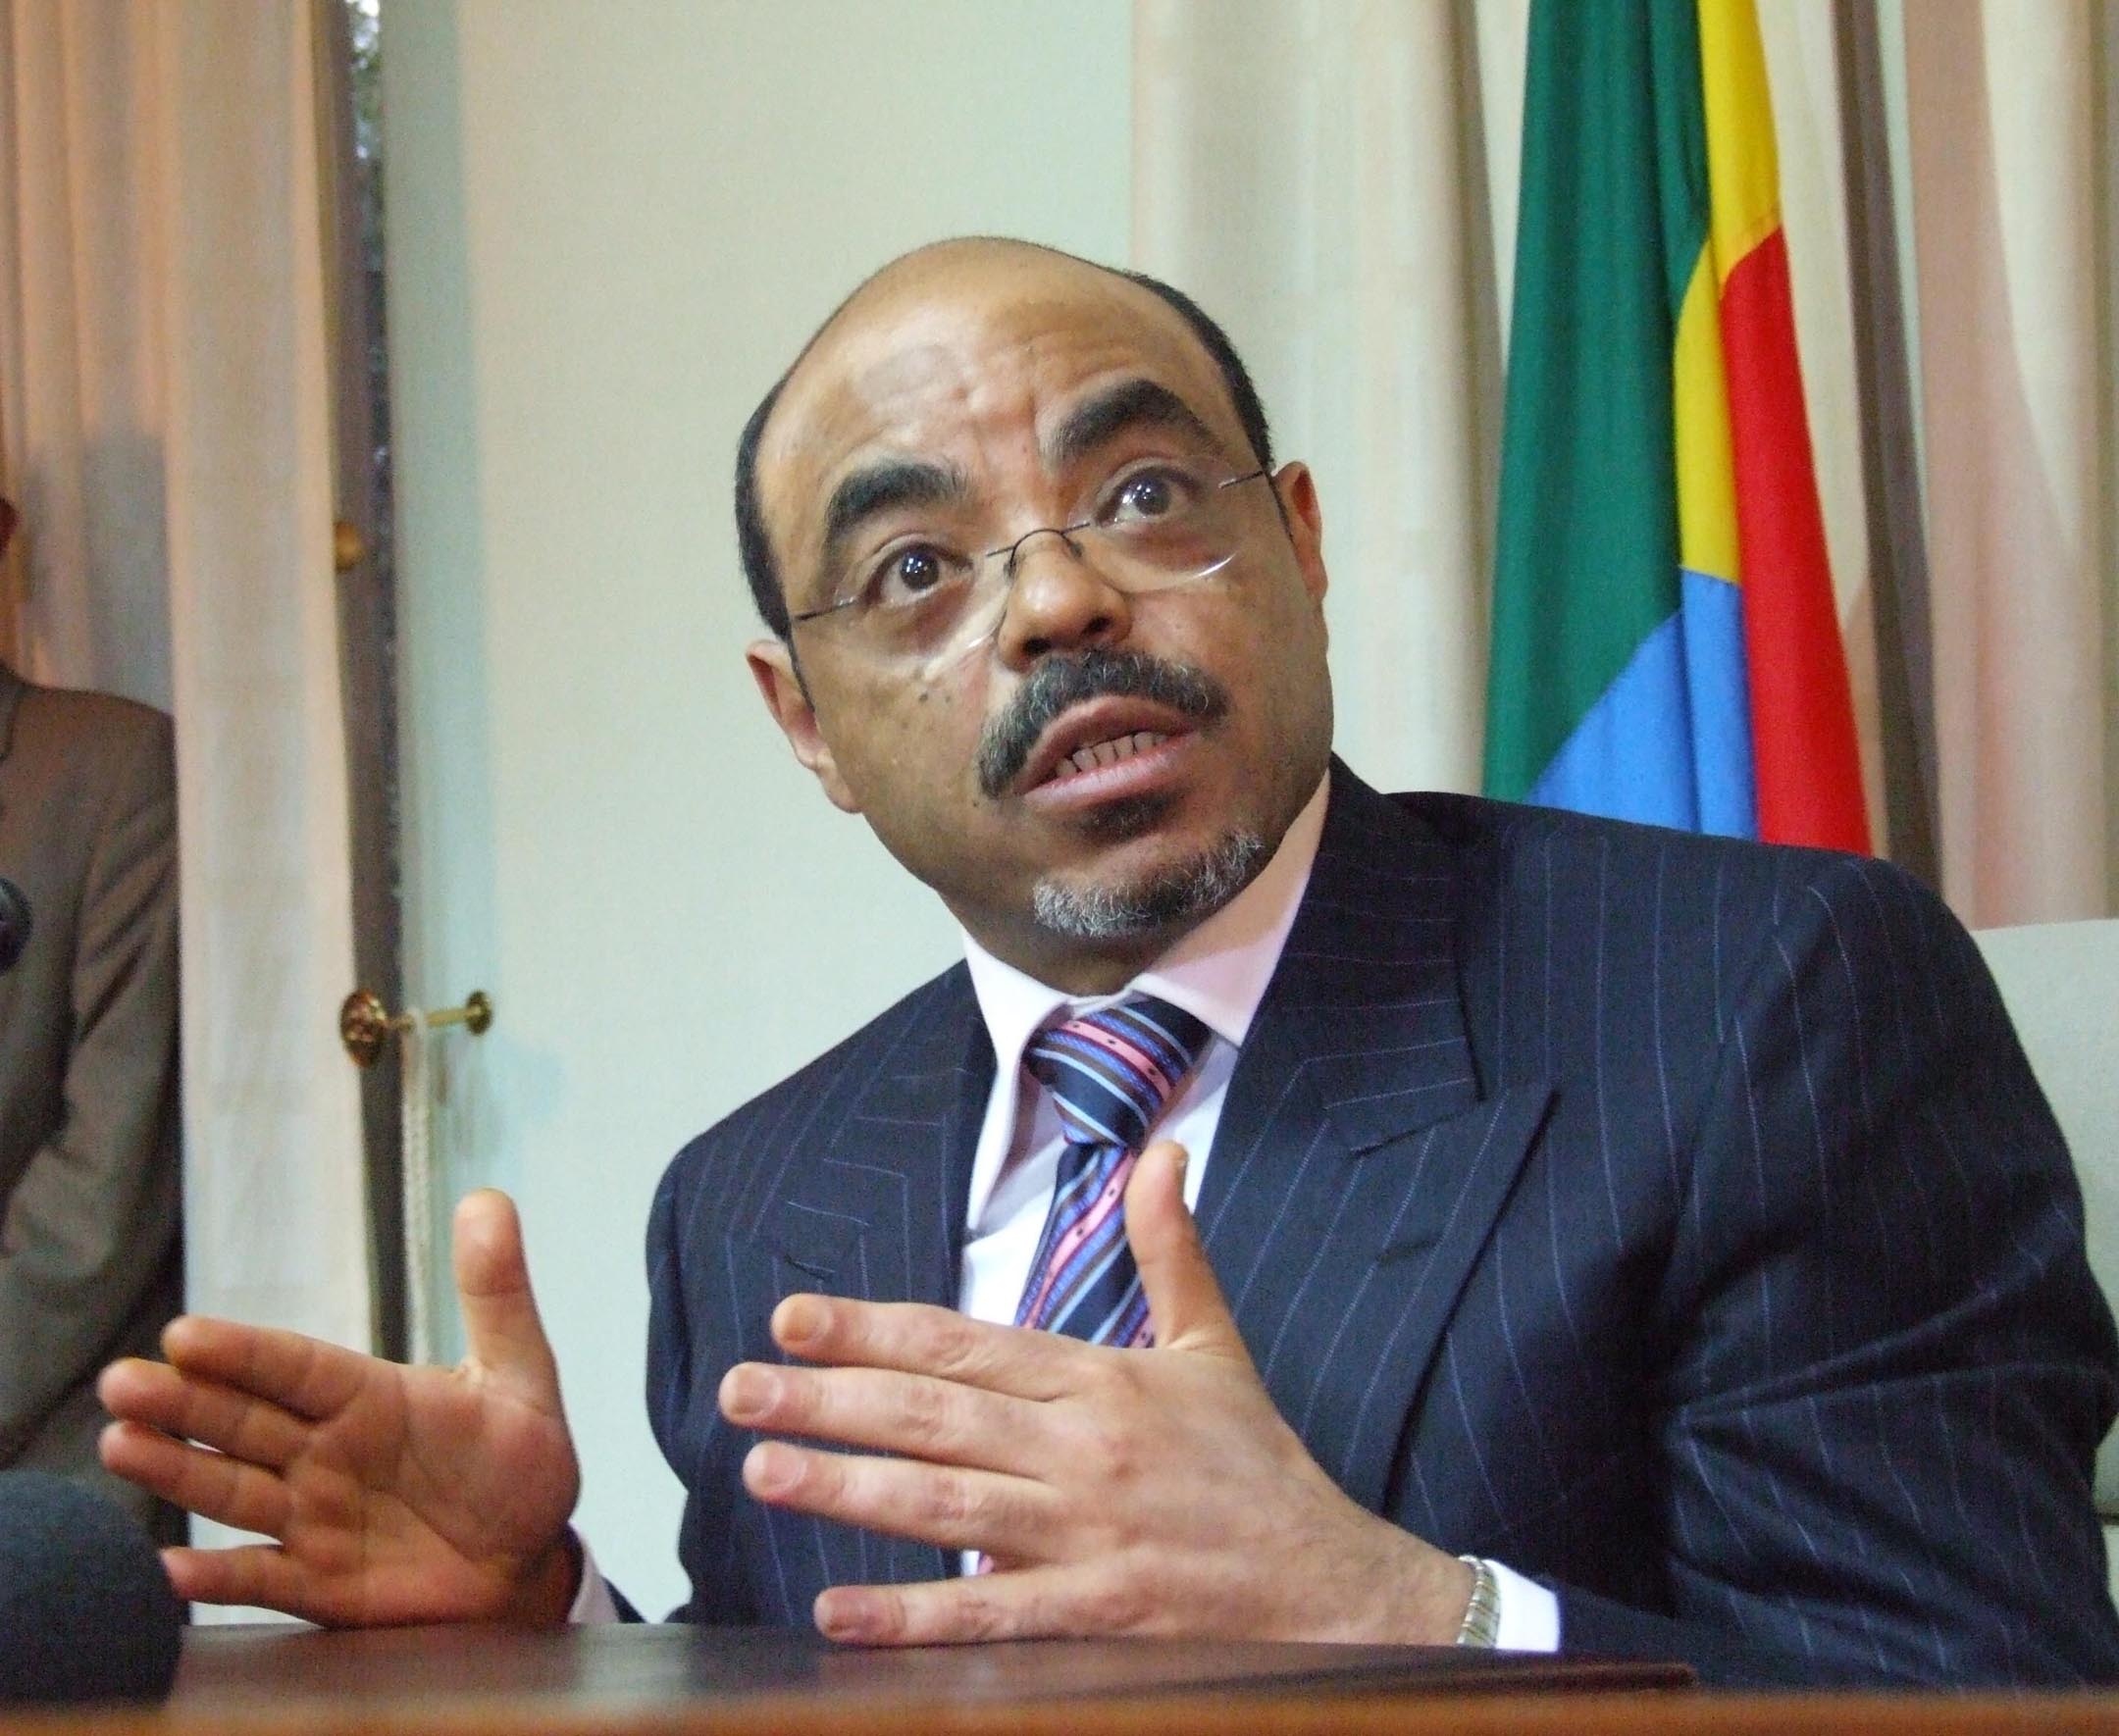 Johan Persson, Meles Zenawi, Martin Schibbye, Etiopien, Carl Bildt, World Economic Forum, Besök, Fängelse